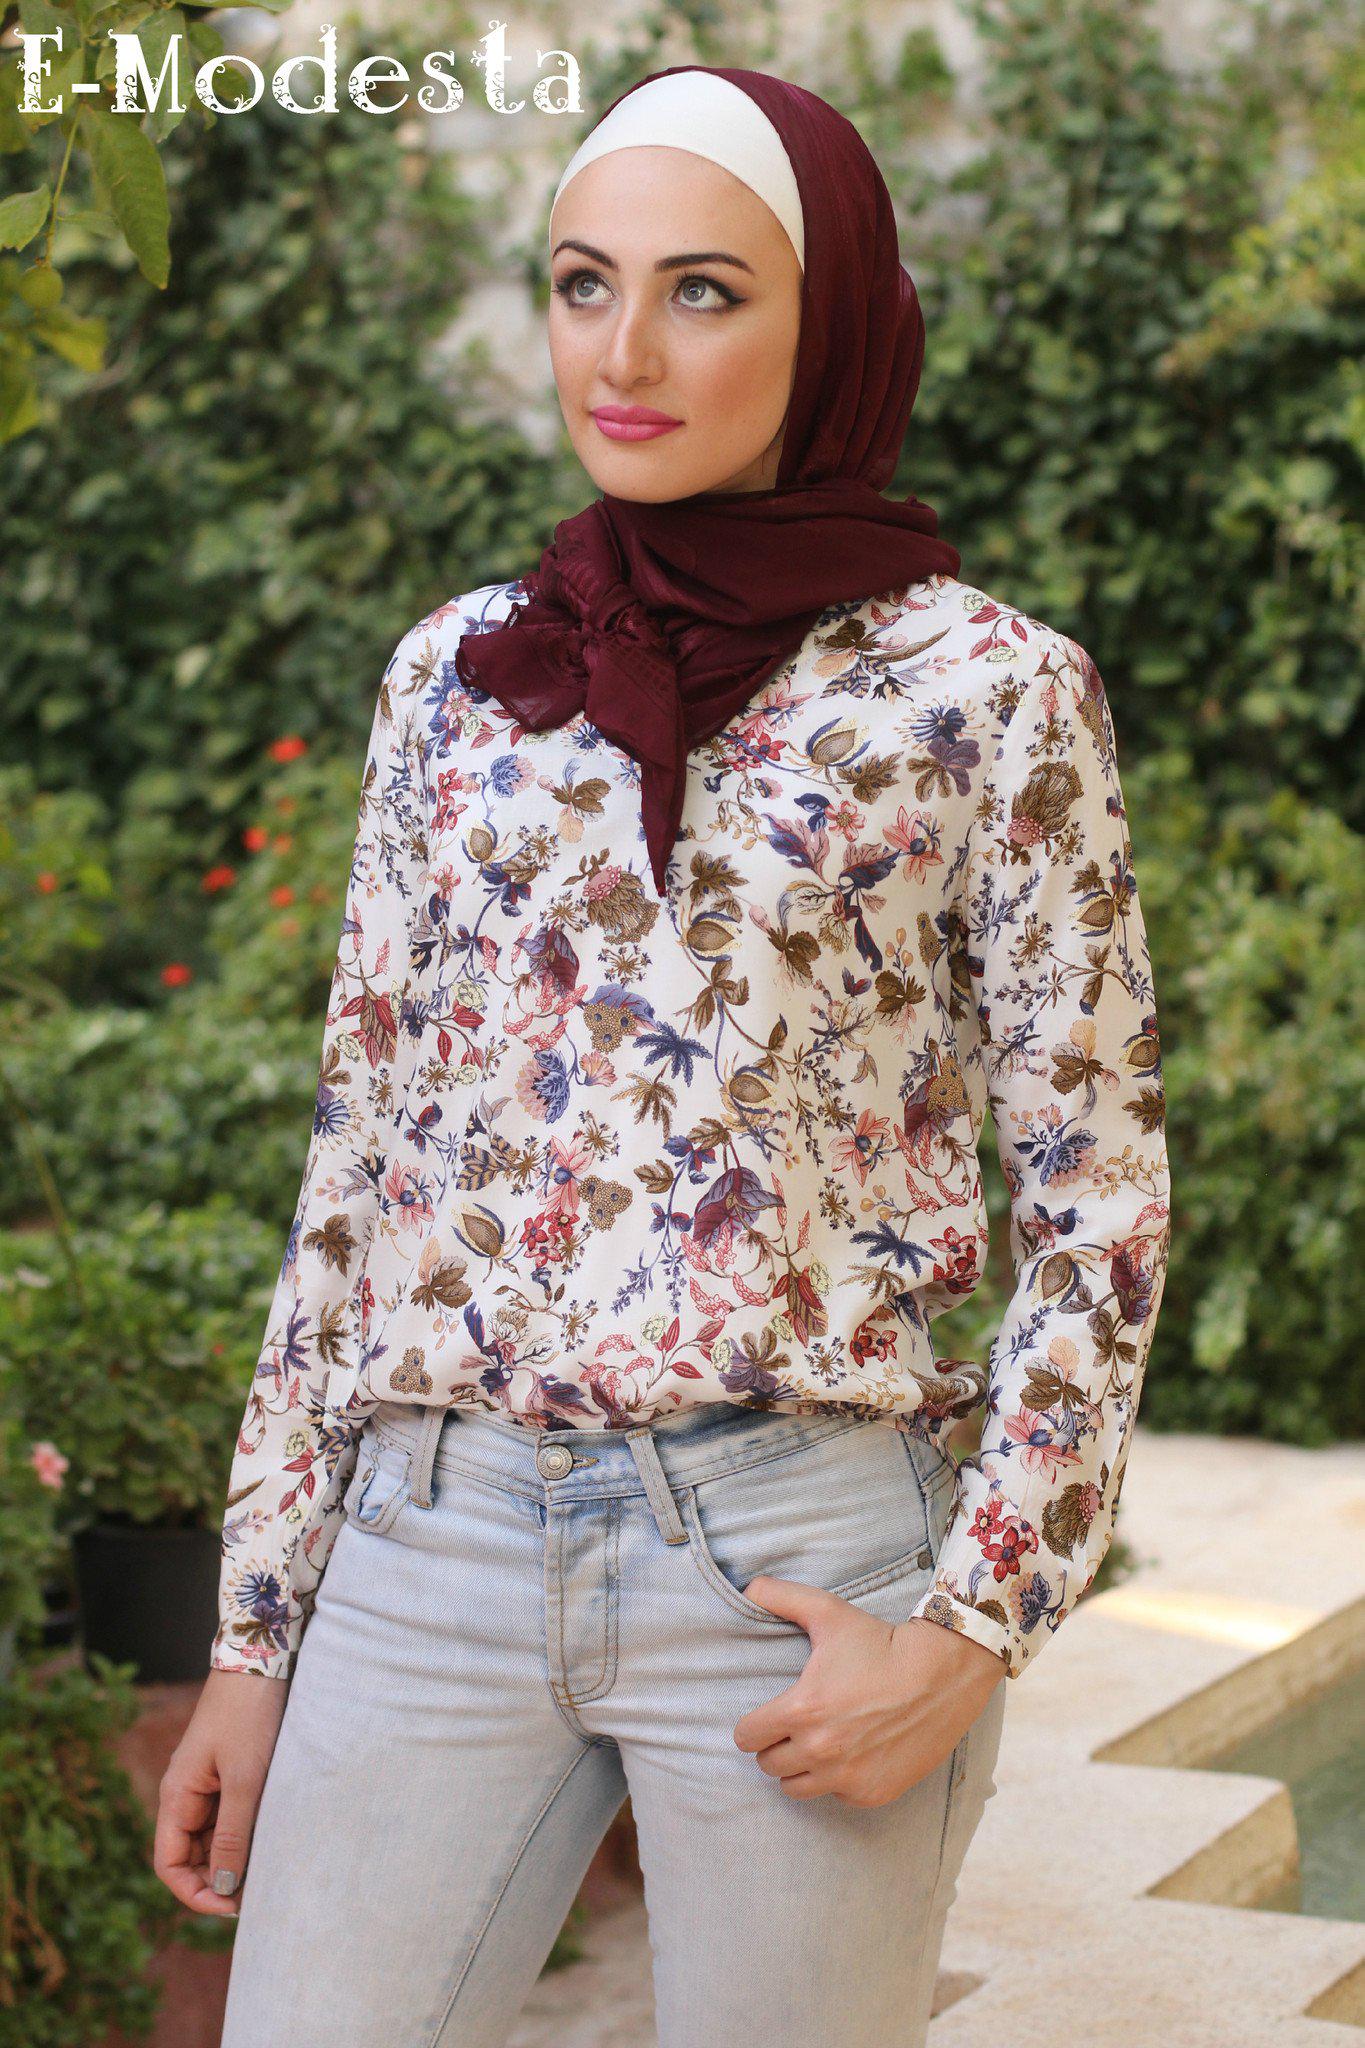 Multicolored floral print blouse - E-Modesta